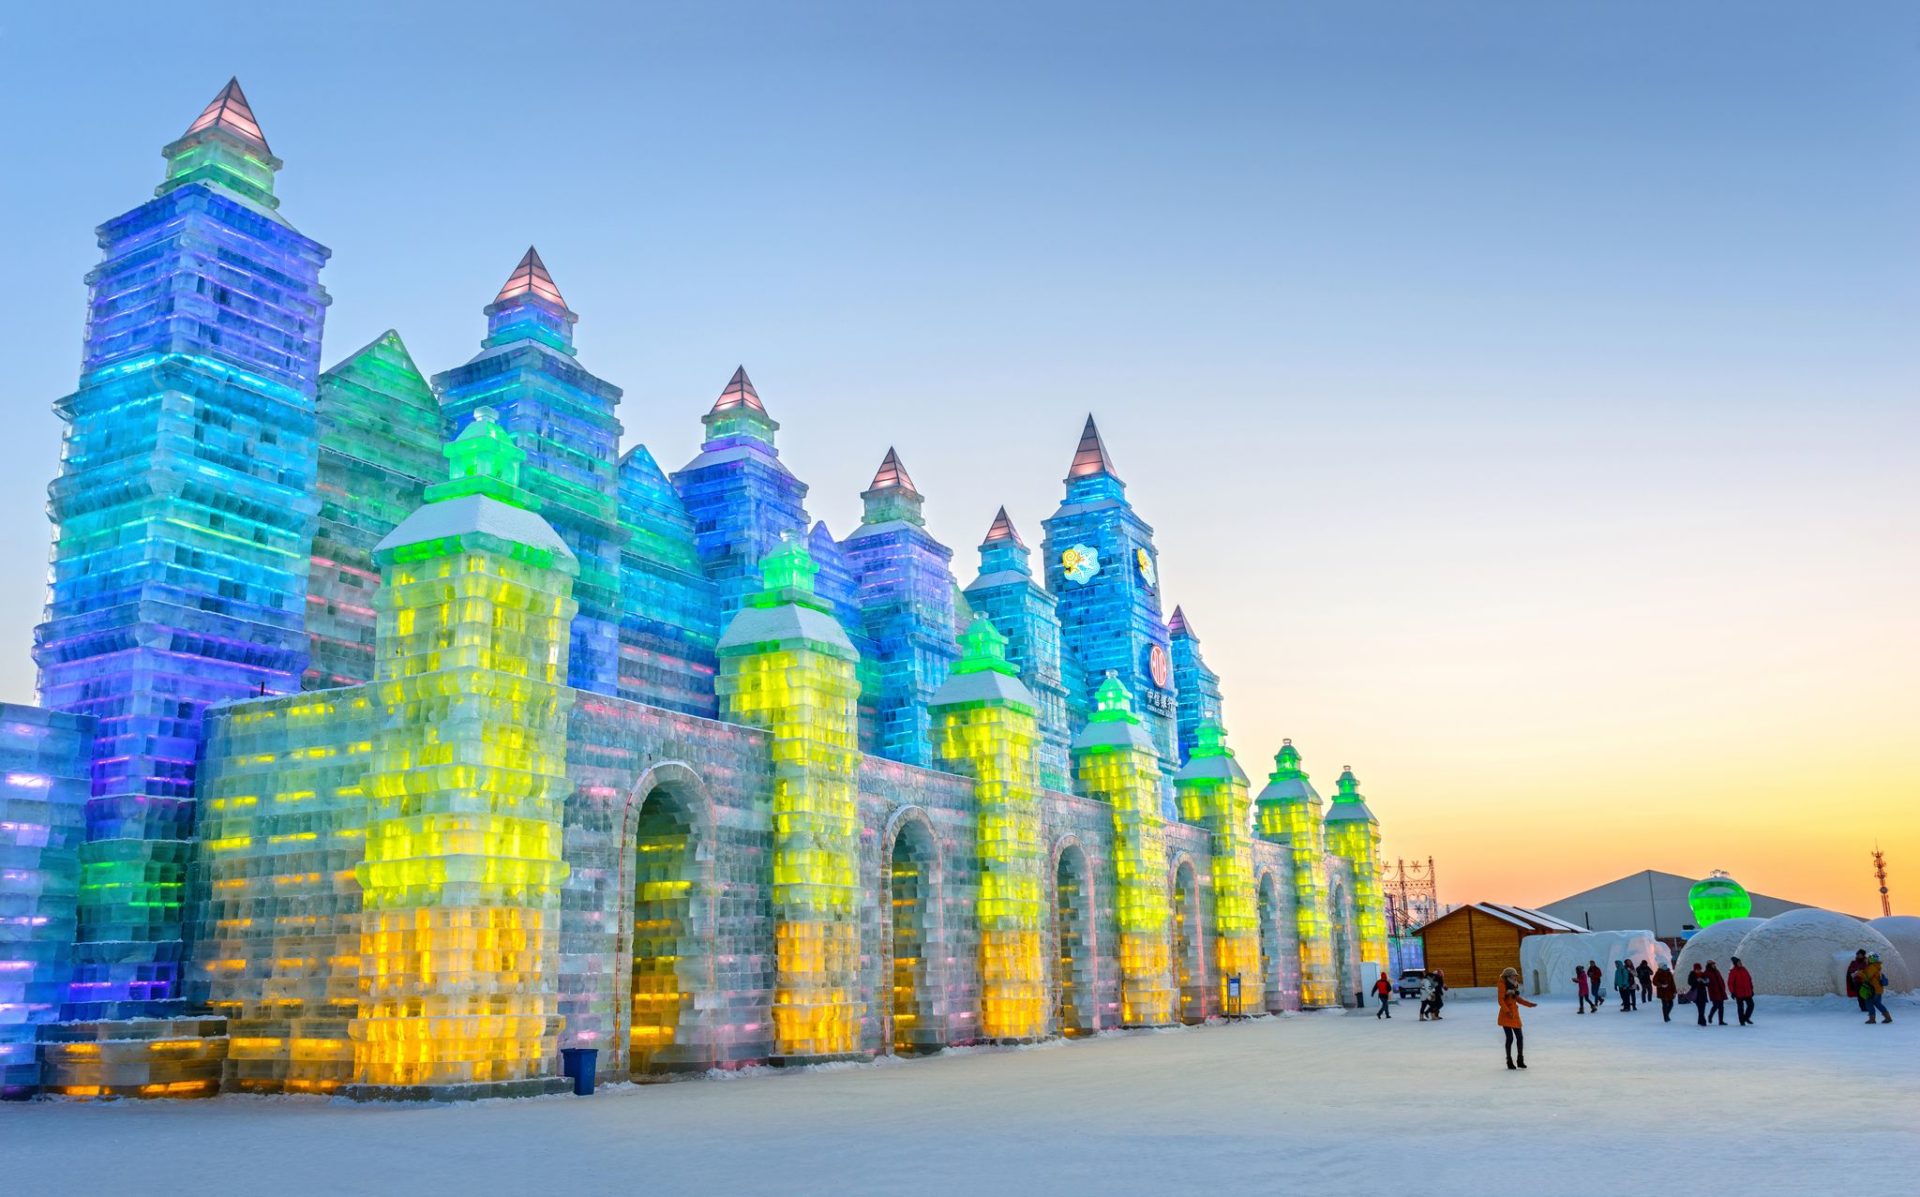 Weltgrößtes Schnee und Eisfestival in der chinesischen Stadt Harbin.